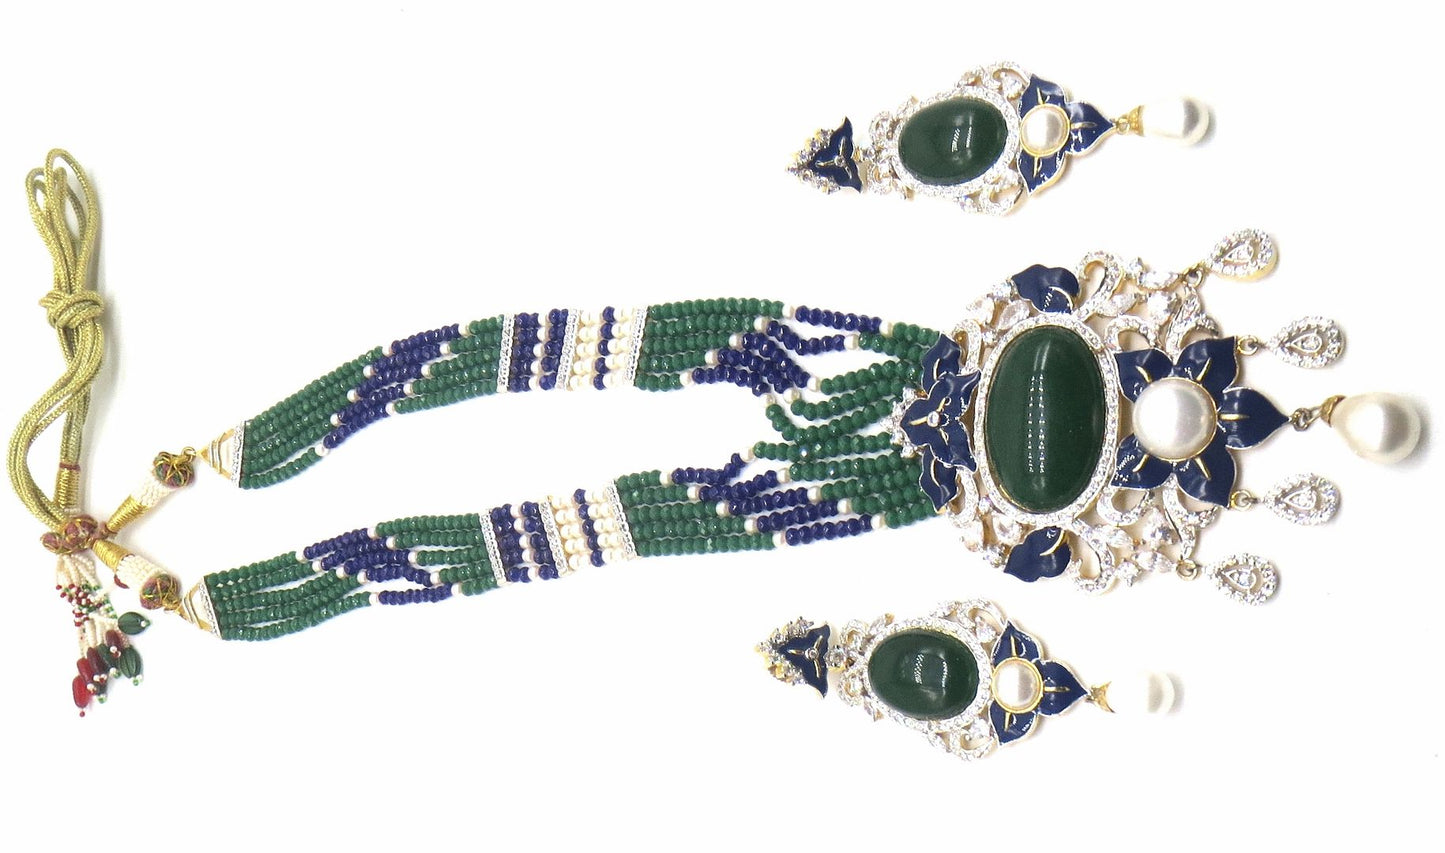 Jewelshingar Jewellery Multi Colour Pendant Set For Women ( 56087PSD )